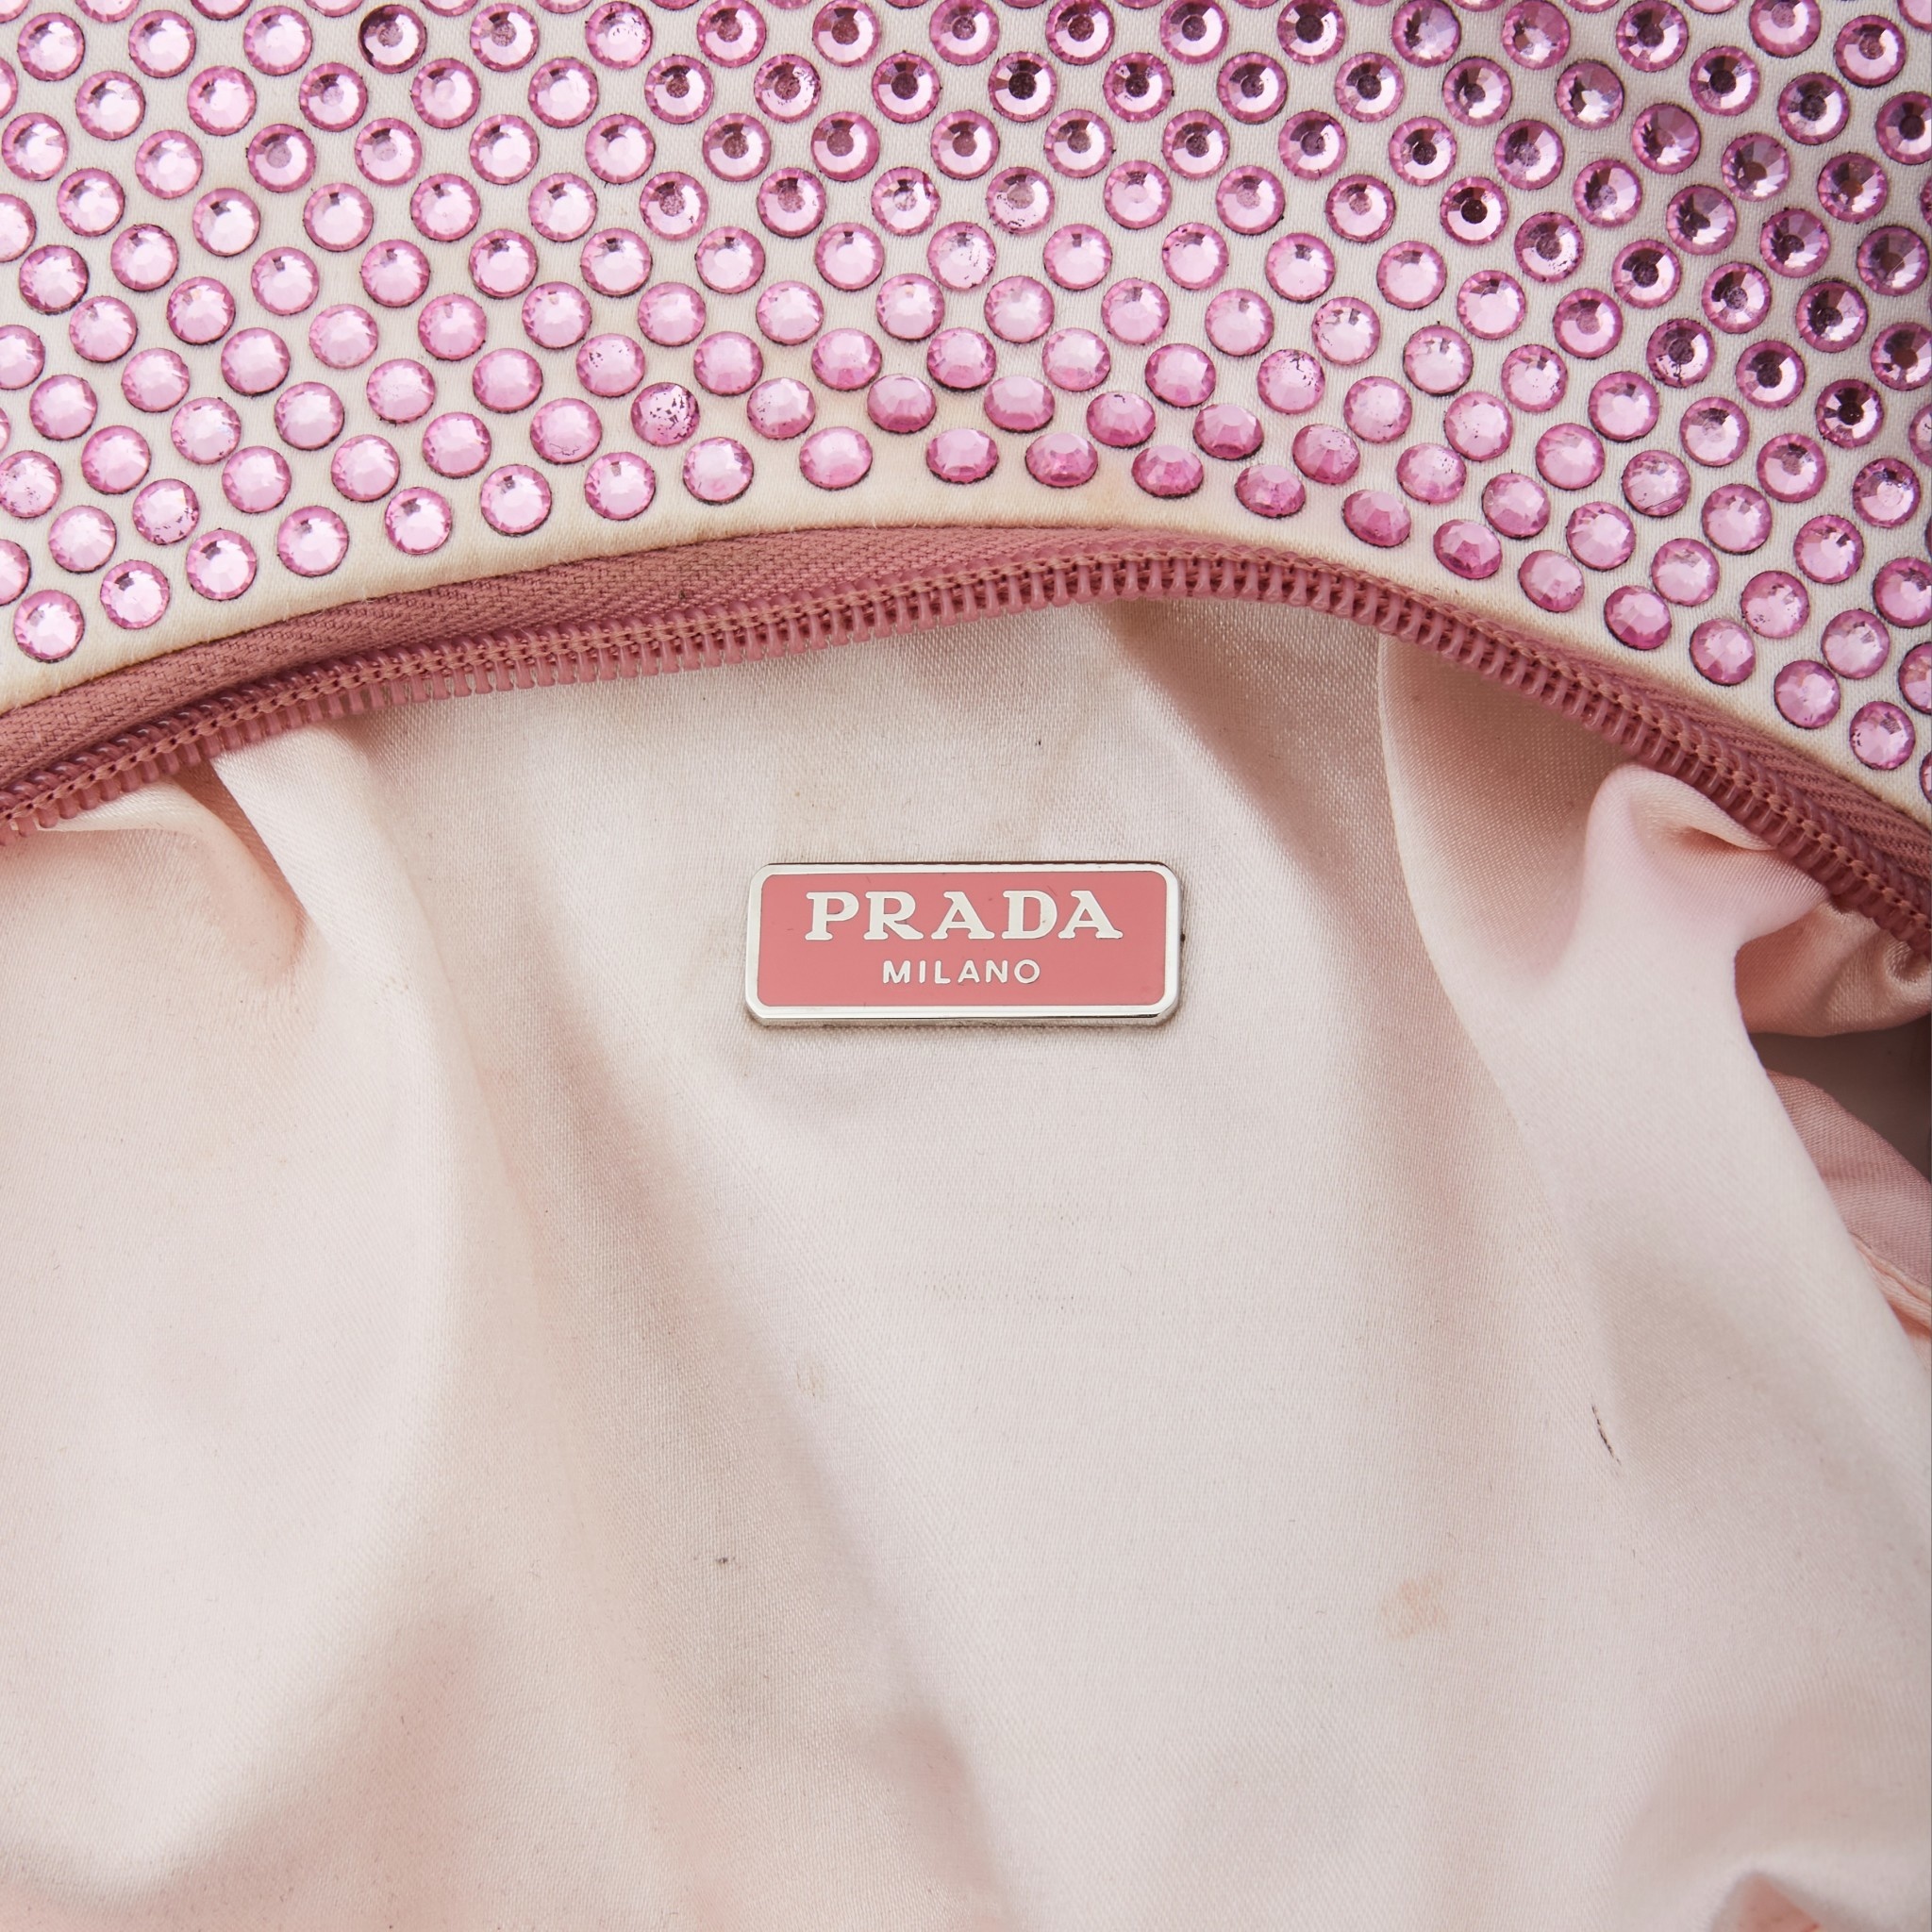 Prada Satin Bag With Crystals (Pink)